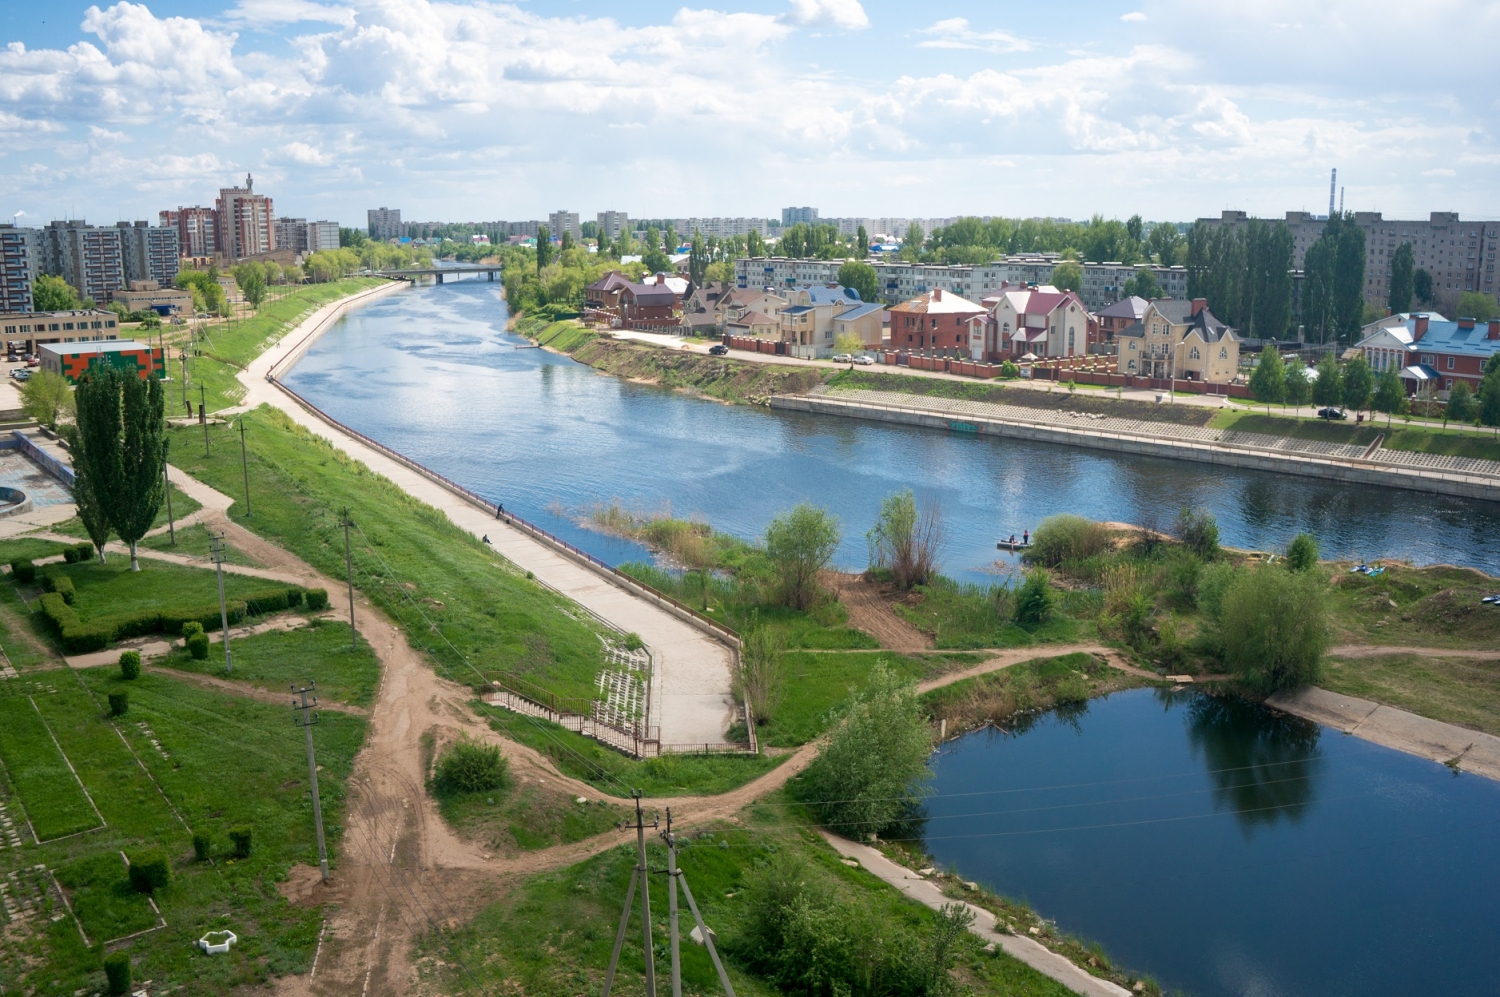 СК «Кронверк» застроит квартал в центре города Балаково